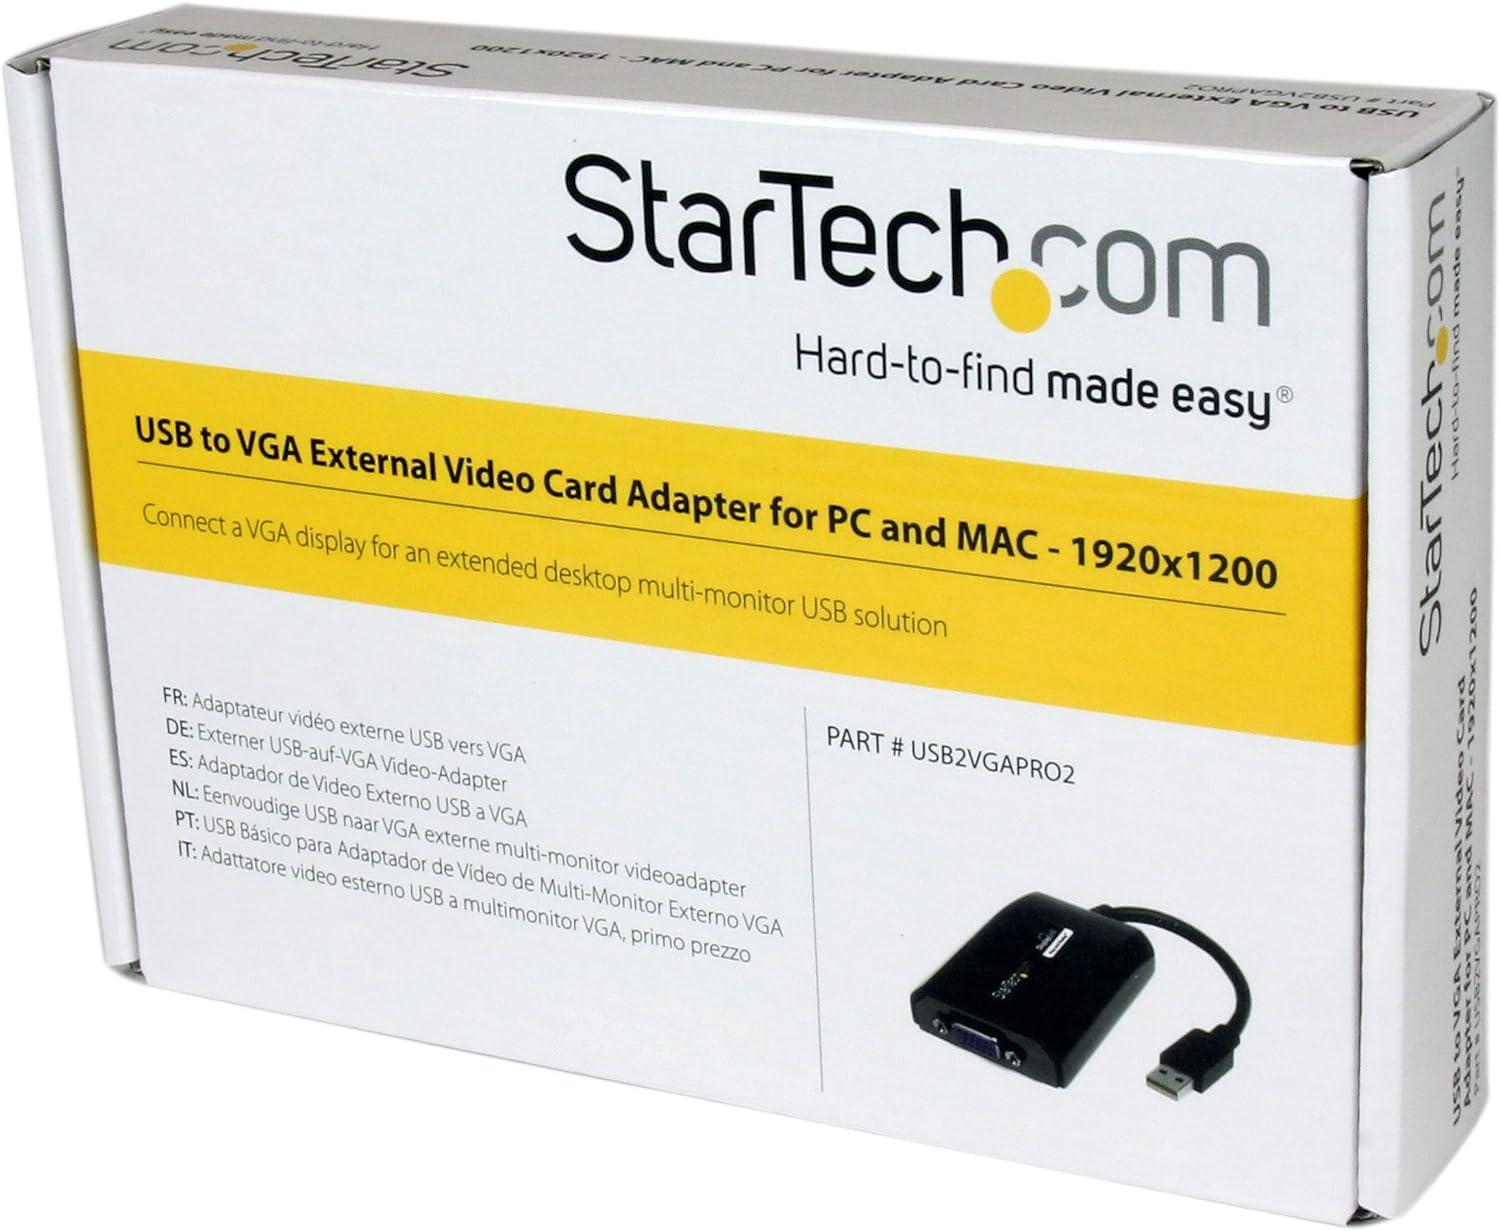 StarTech.com USB to VGA Adapter - 1920x1200 - External Video